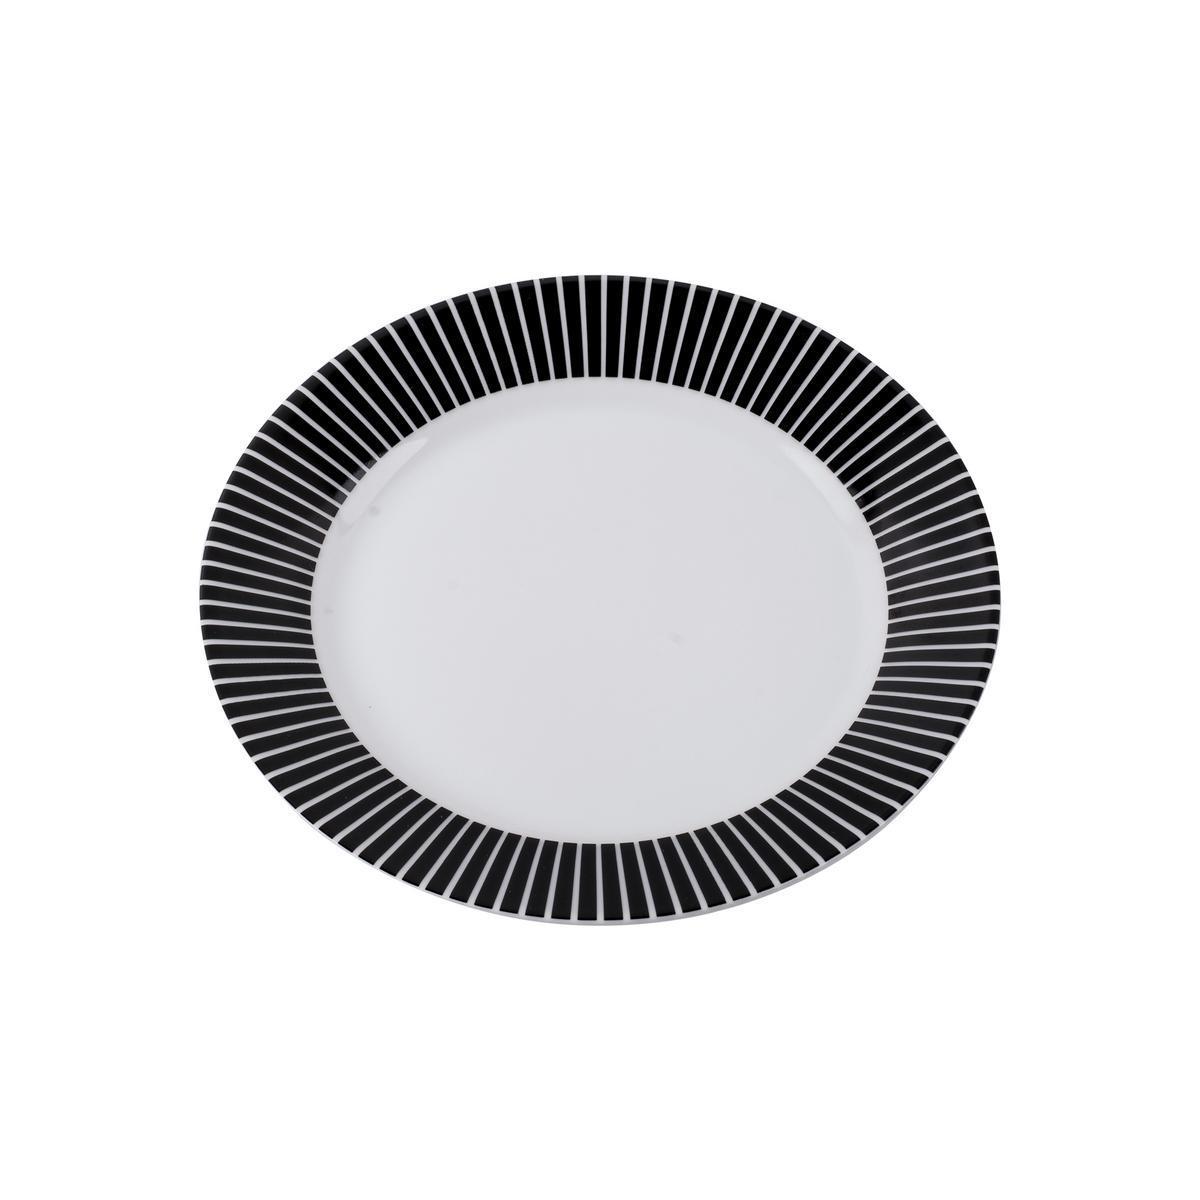 Assiette plate - Porcelaine - Ø 19 cm - Noir et blanc